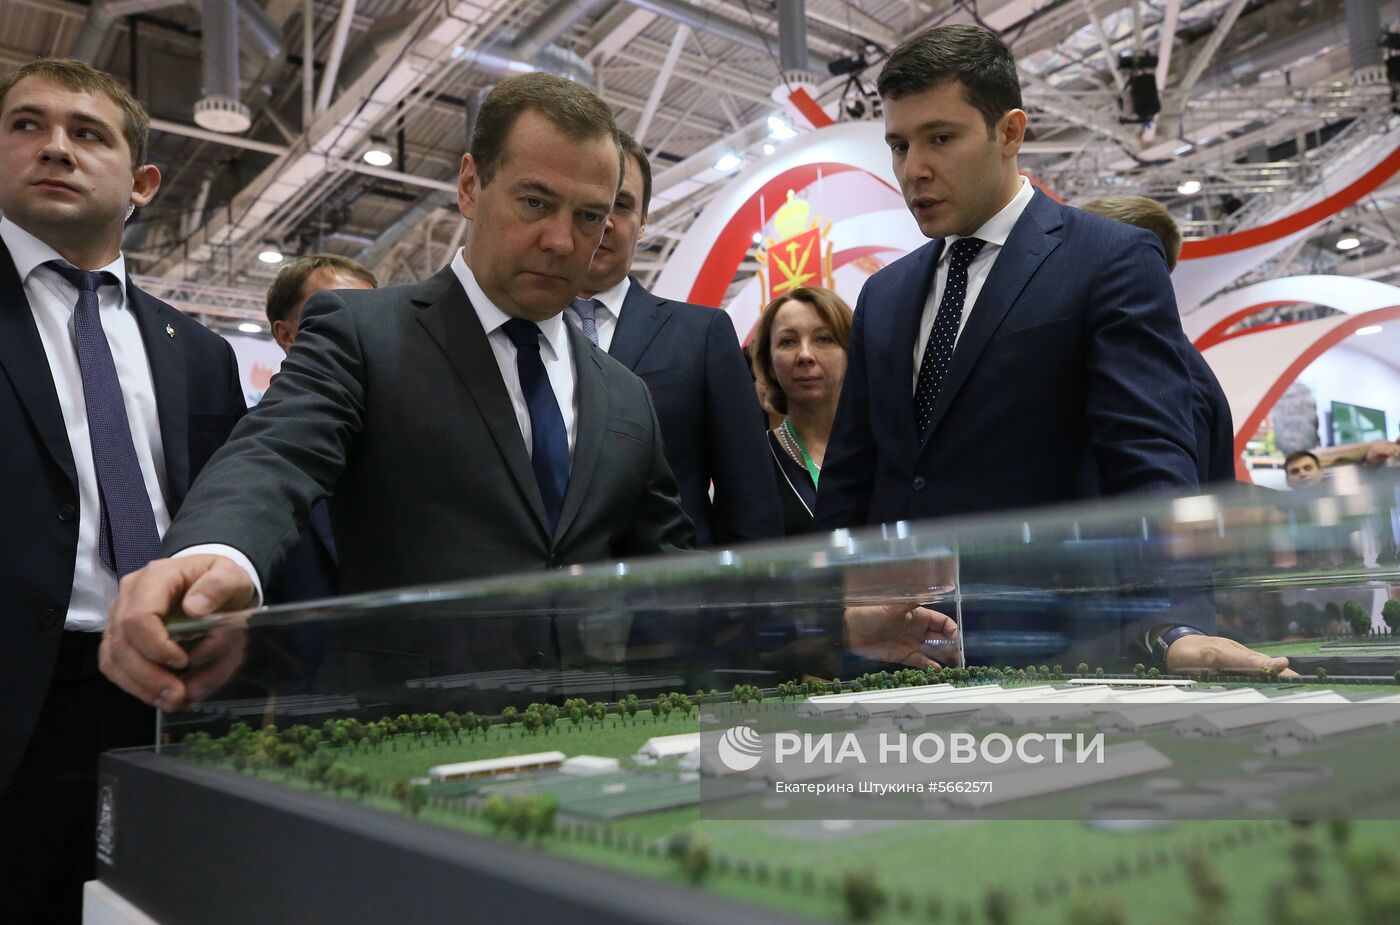 Премьер-министр РФ Д. Медведев на открытии 20-й агропромышленной выставки «Золотая осень»